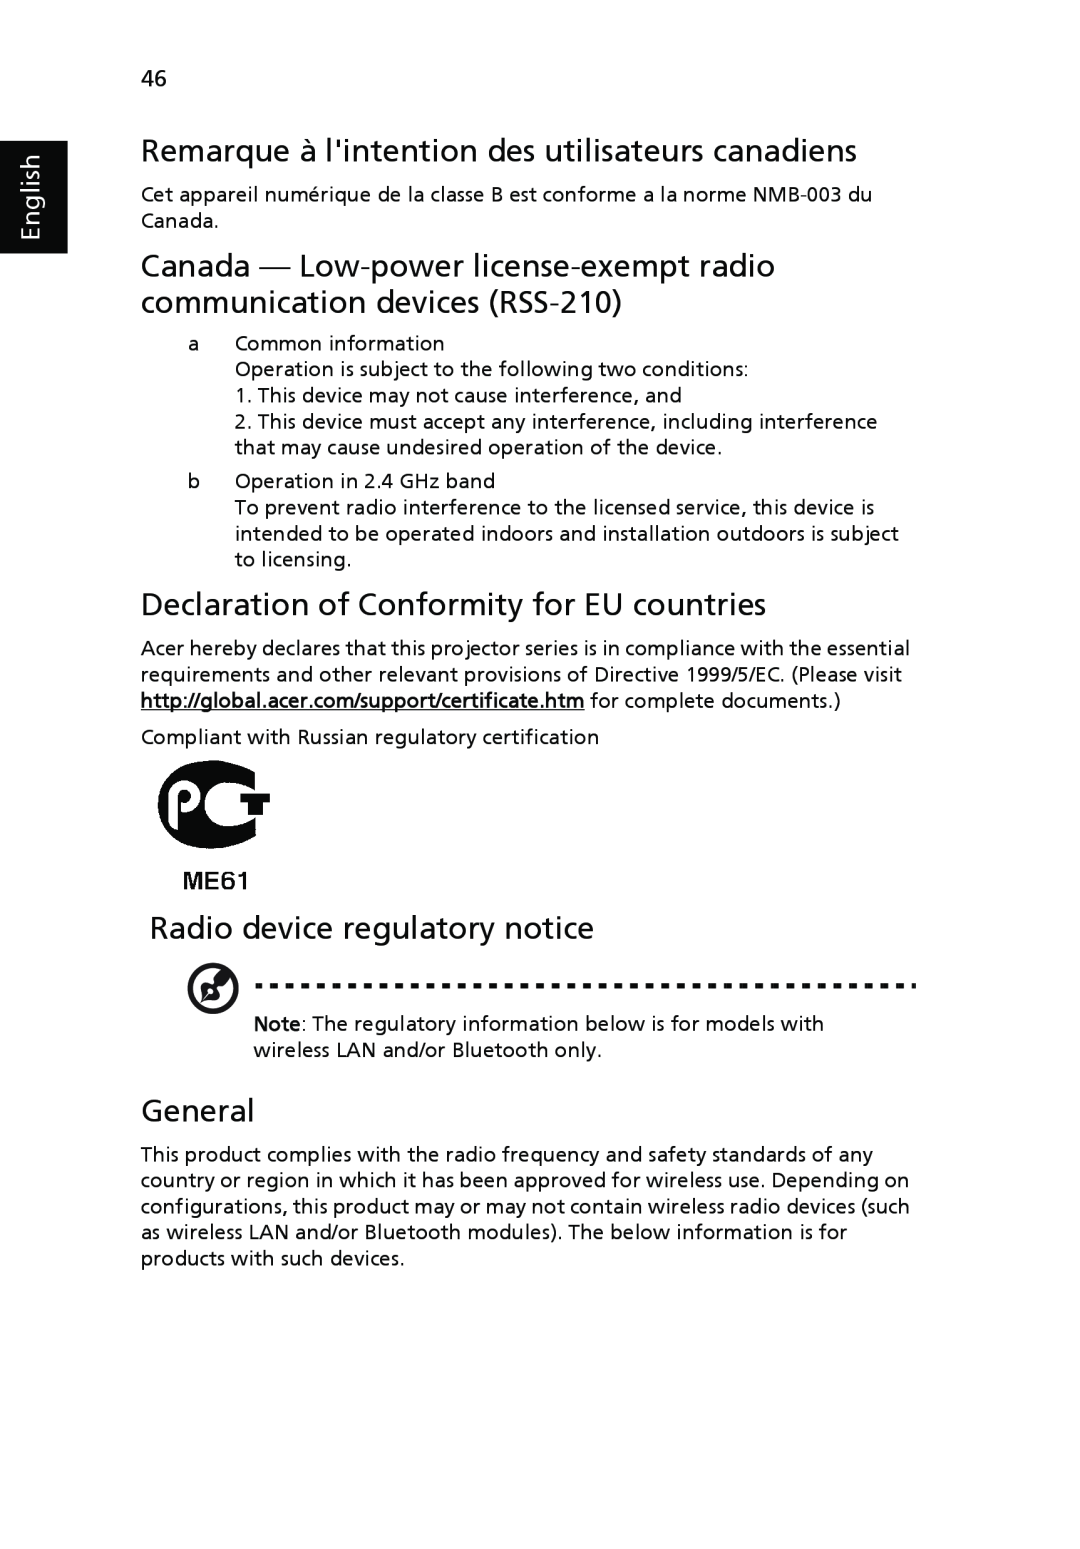 Acer P7270 Remarque à lintention des utilisateurs canadiens, Declaration of Conformity for EU countries, General, English 